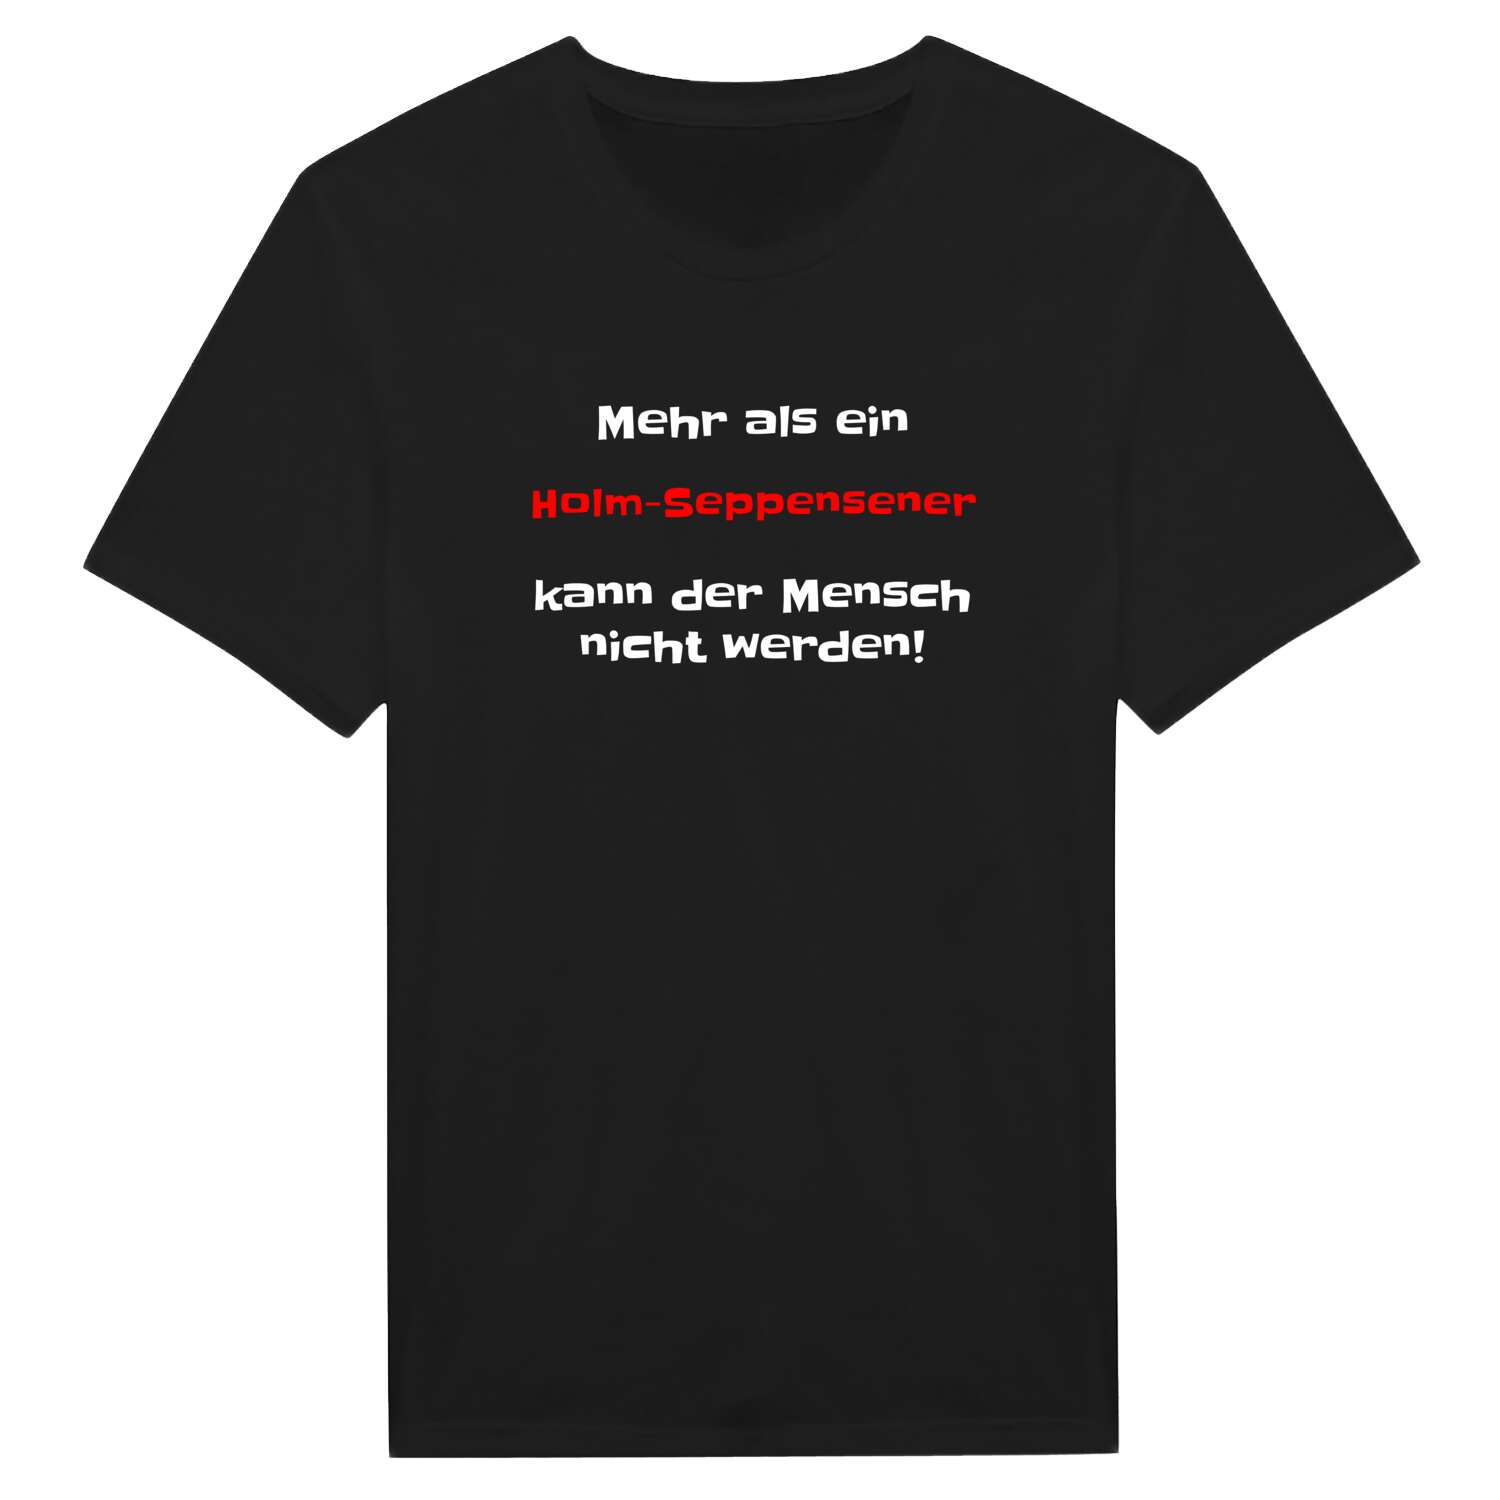 Holm-Seppensen T-Shirt »Mehr als ein«